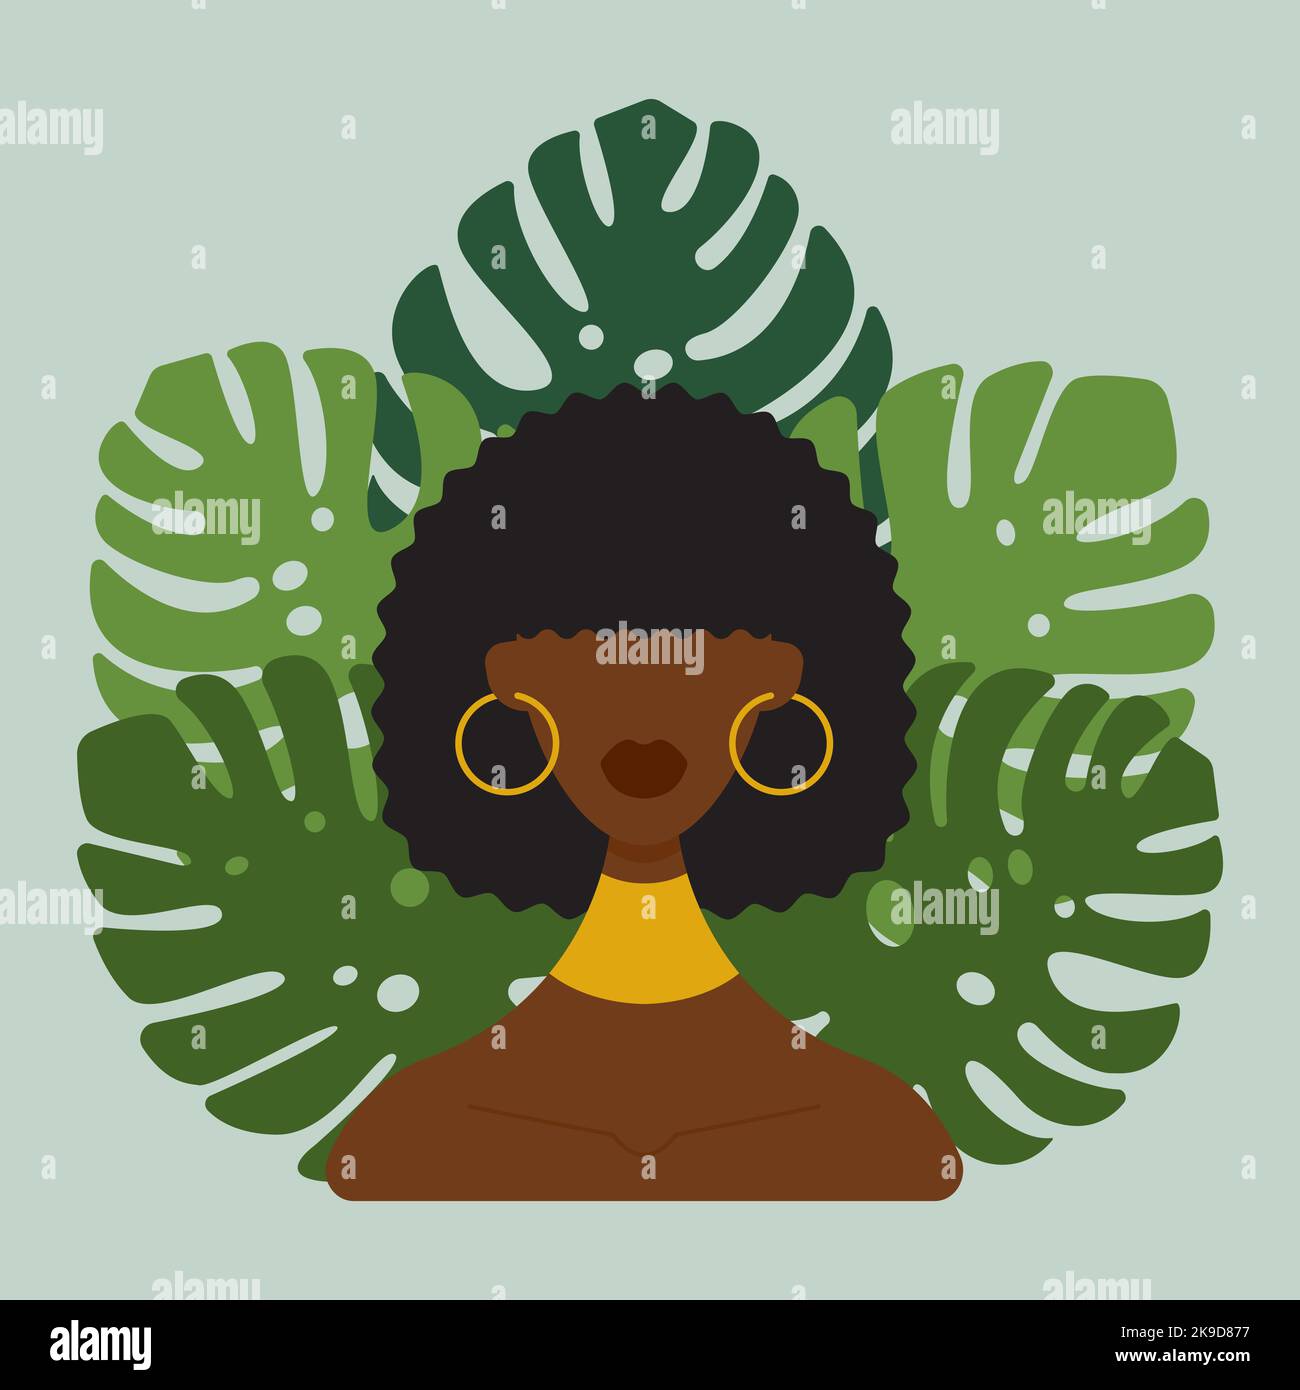 Junge dunkelhäutige Frau mit schwarzen lockigen Haaren. Mit runden gelben Ohrringen und einem Ornament um den Hals, vor einem Hintergrund aus grünen tropischen Blättern. Flache Vektorgrafik. Stock Vektor